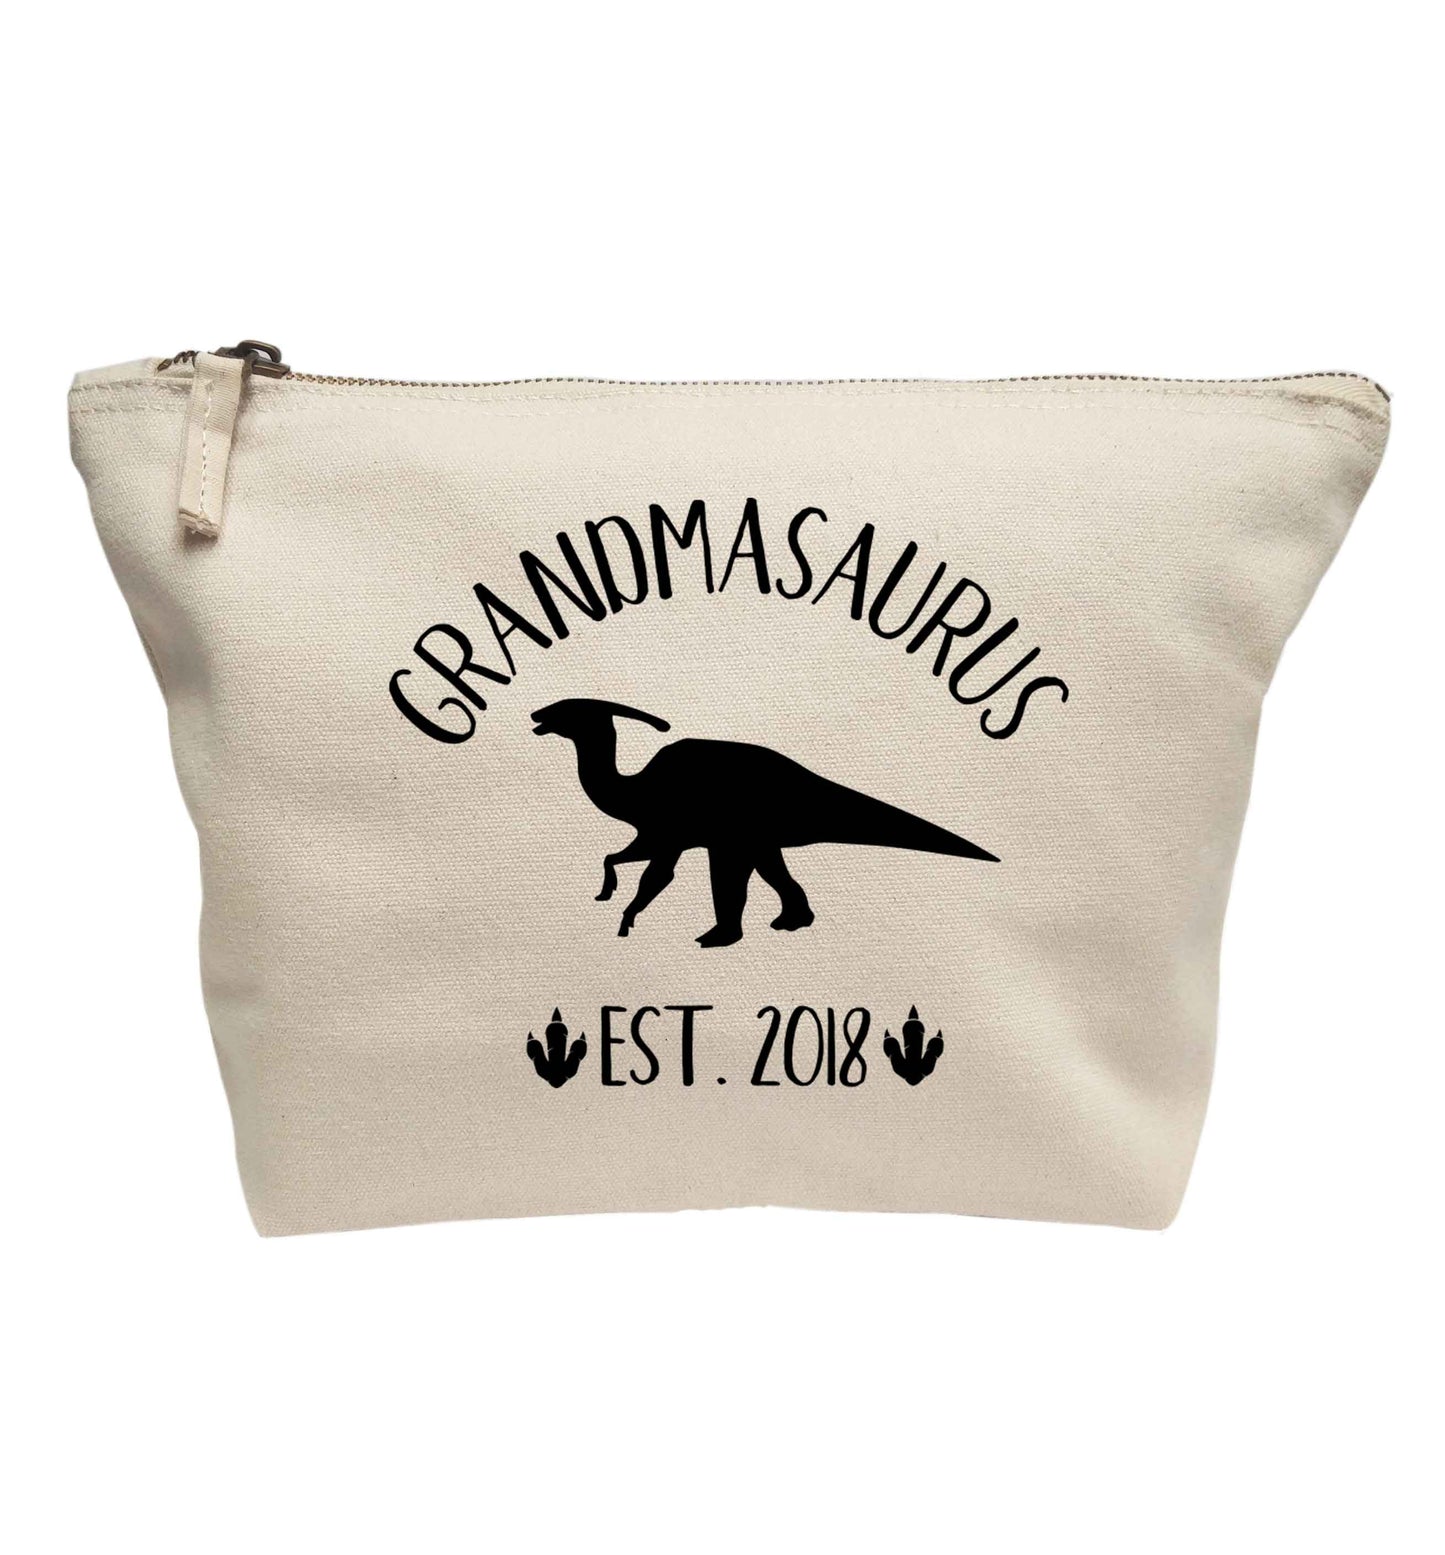 Personalised grandmasaurus since (custom date) | makeup / wash bag